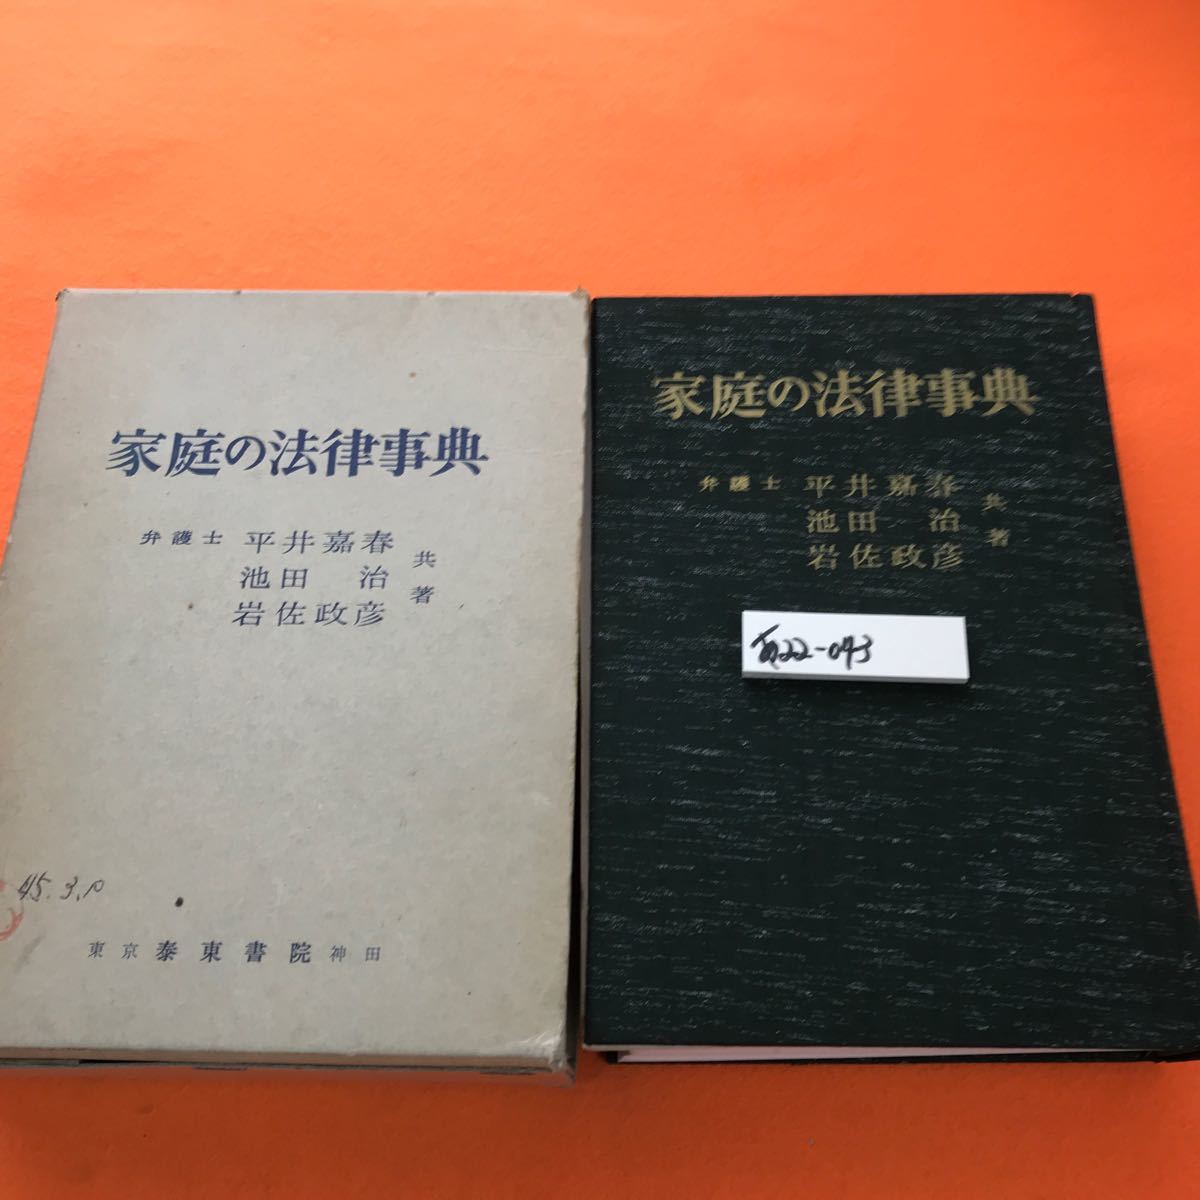 あ22-043 家庭の法律事典 弁護士 平井嘉春 共著 書き込み、ページ割れ、折れ 外箱 書き込み、印有り